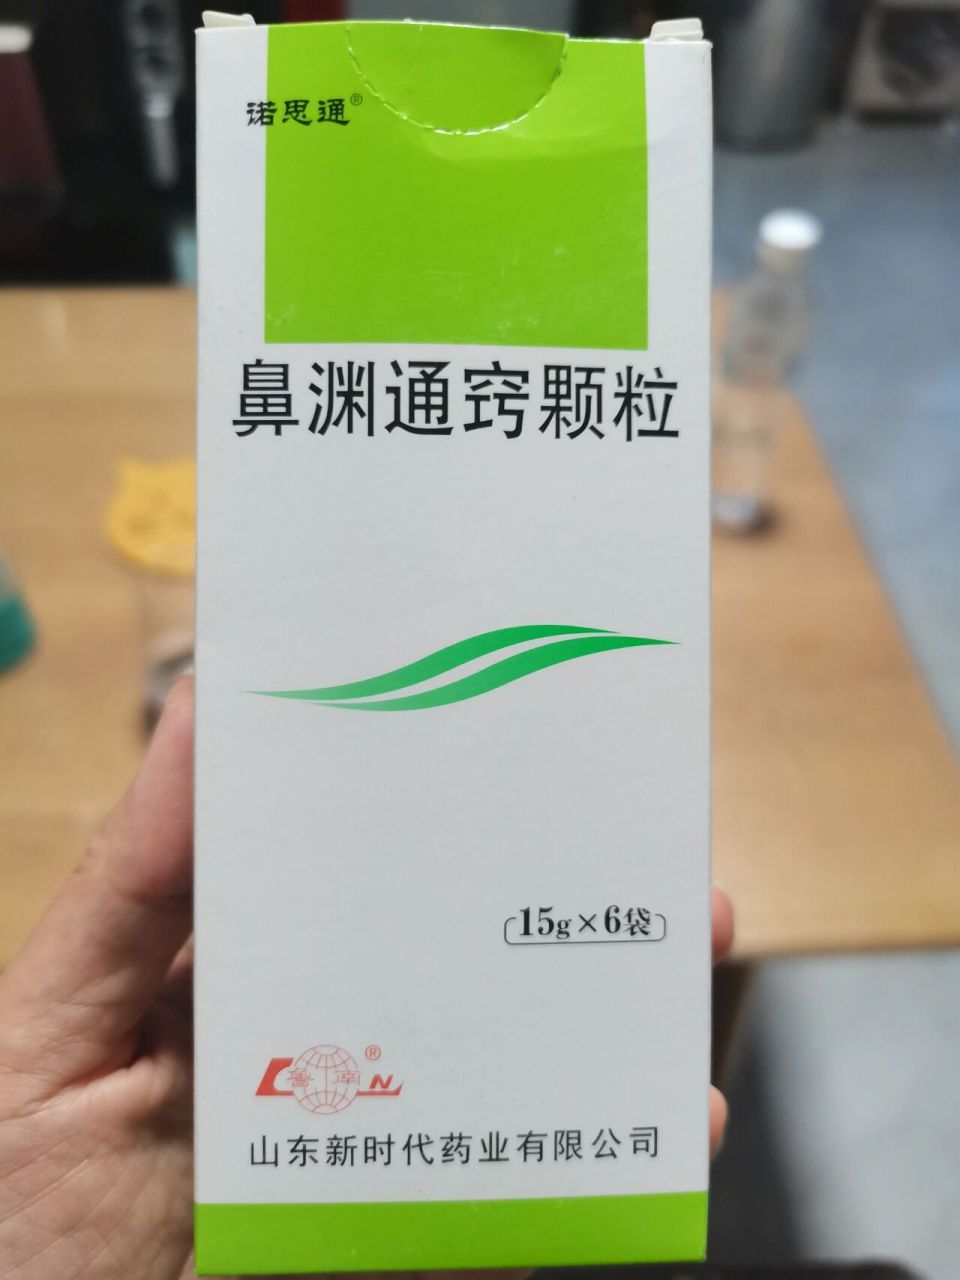 鼻渊通窍颗粒简直是灵丹妙药 这个药昨天偶然在上看到的,是一个北京的